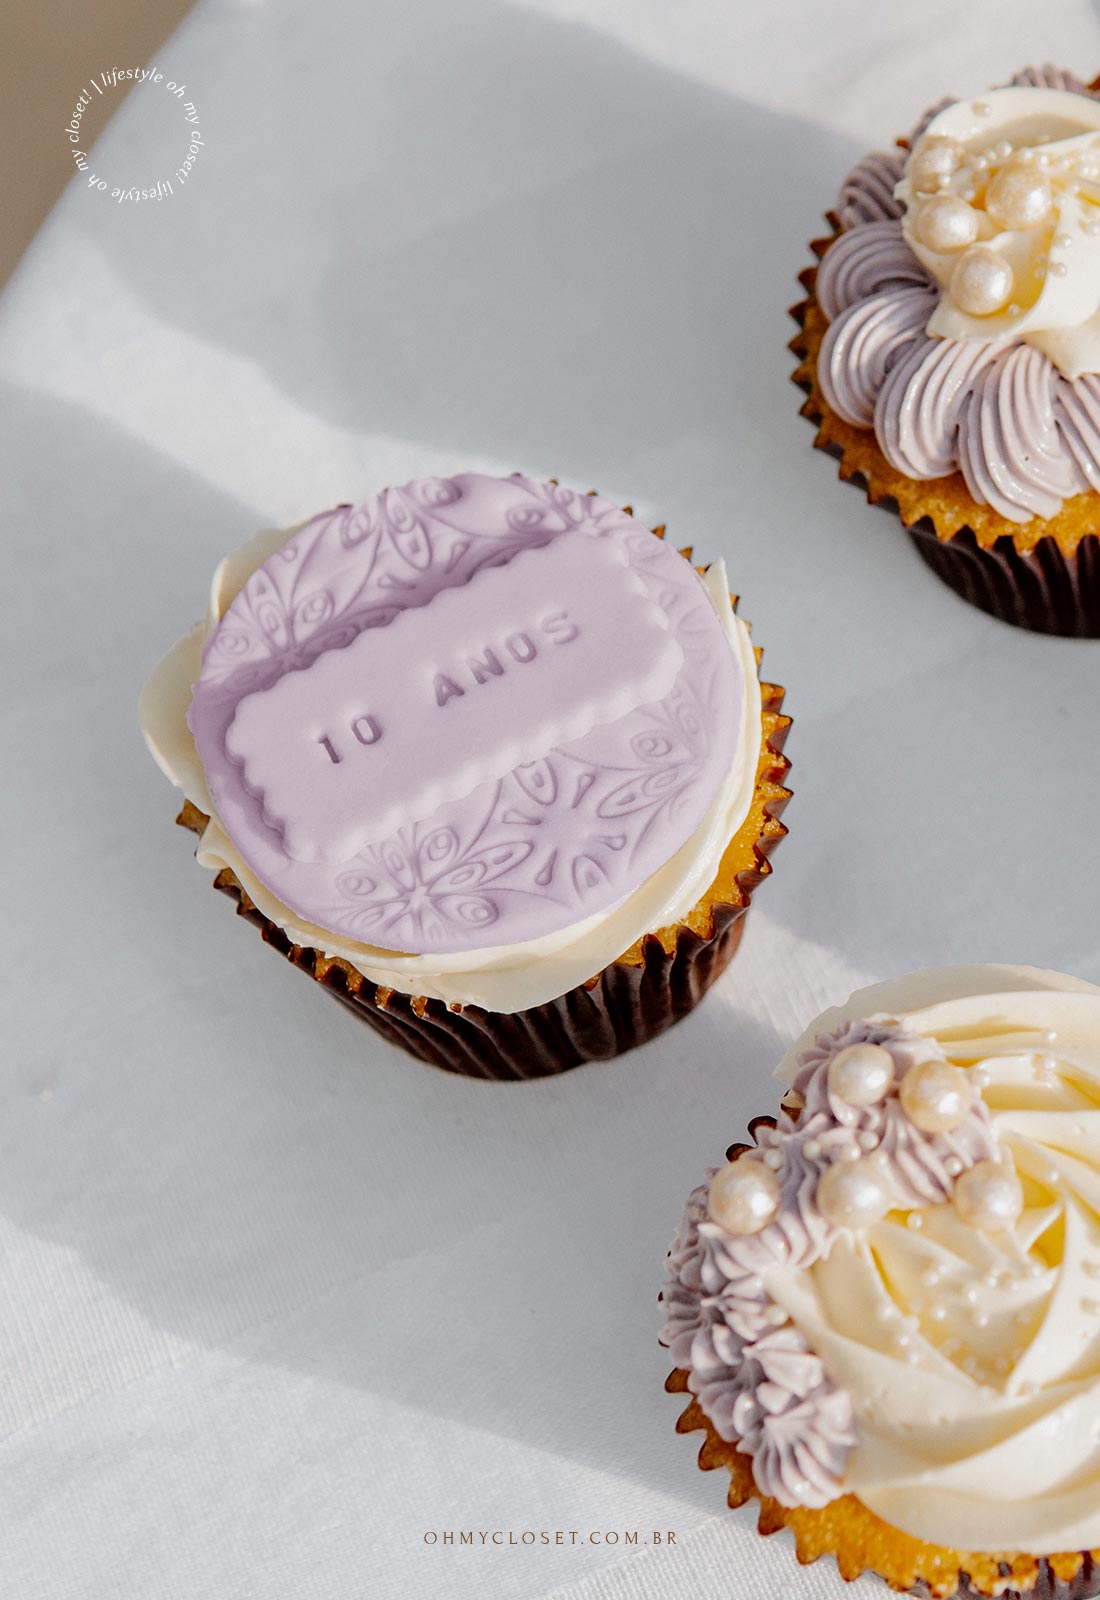 Detalhe dos cupcakes, comemoração em casa durante a pandemia.